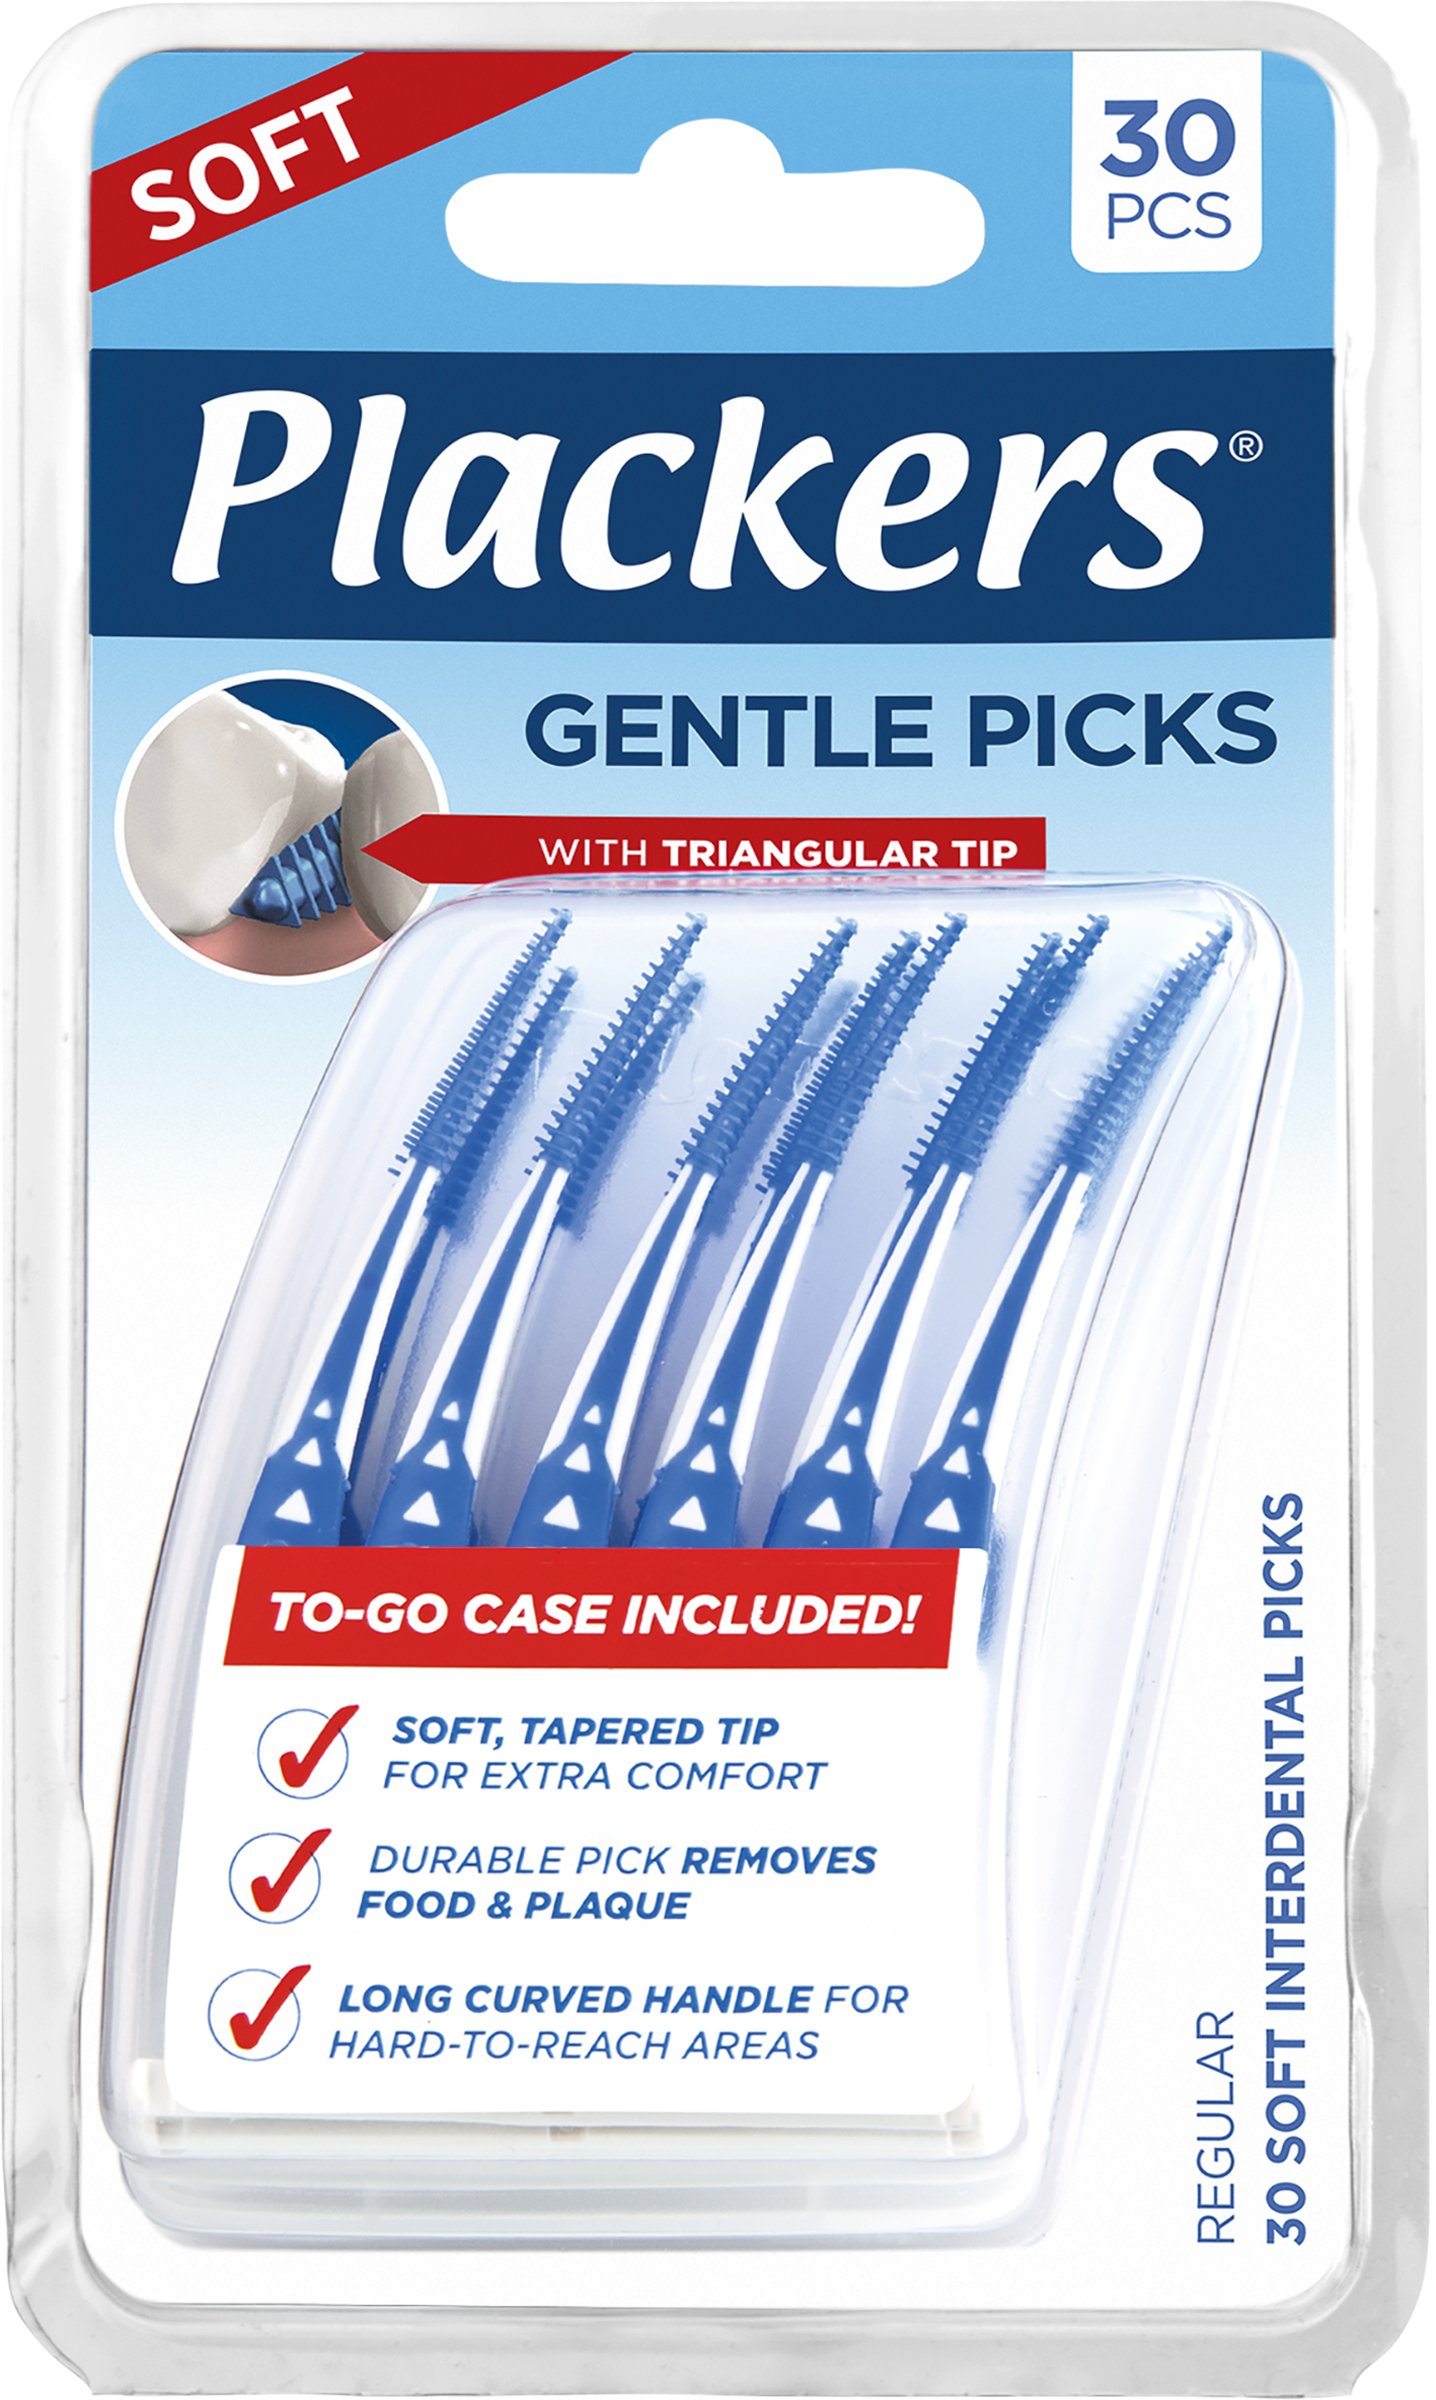 Plackers Gentle Picks Soft Tandstickor 30 st